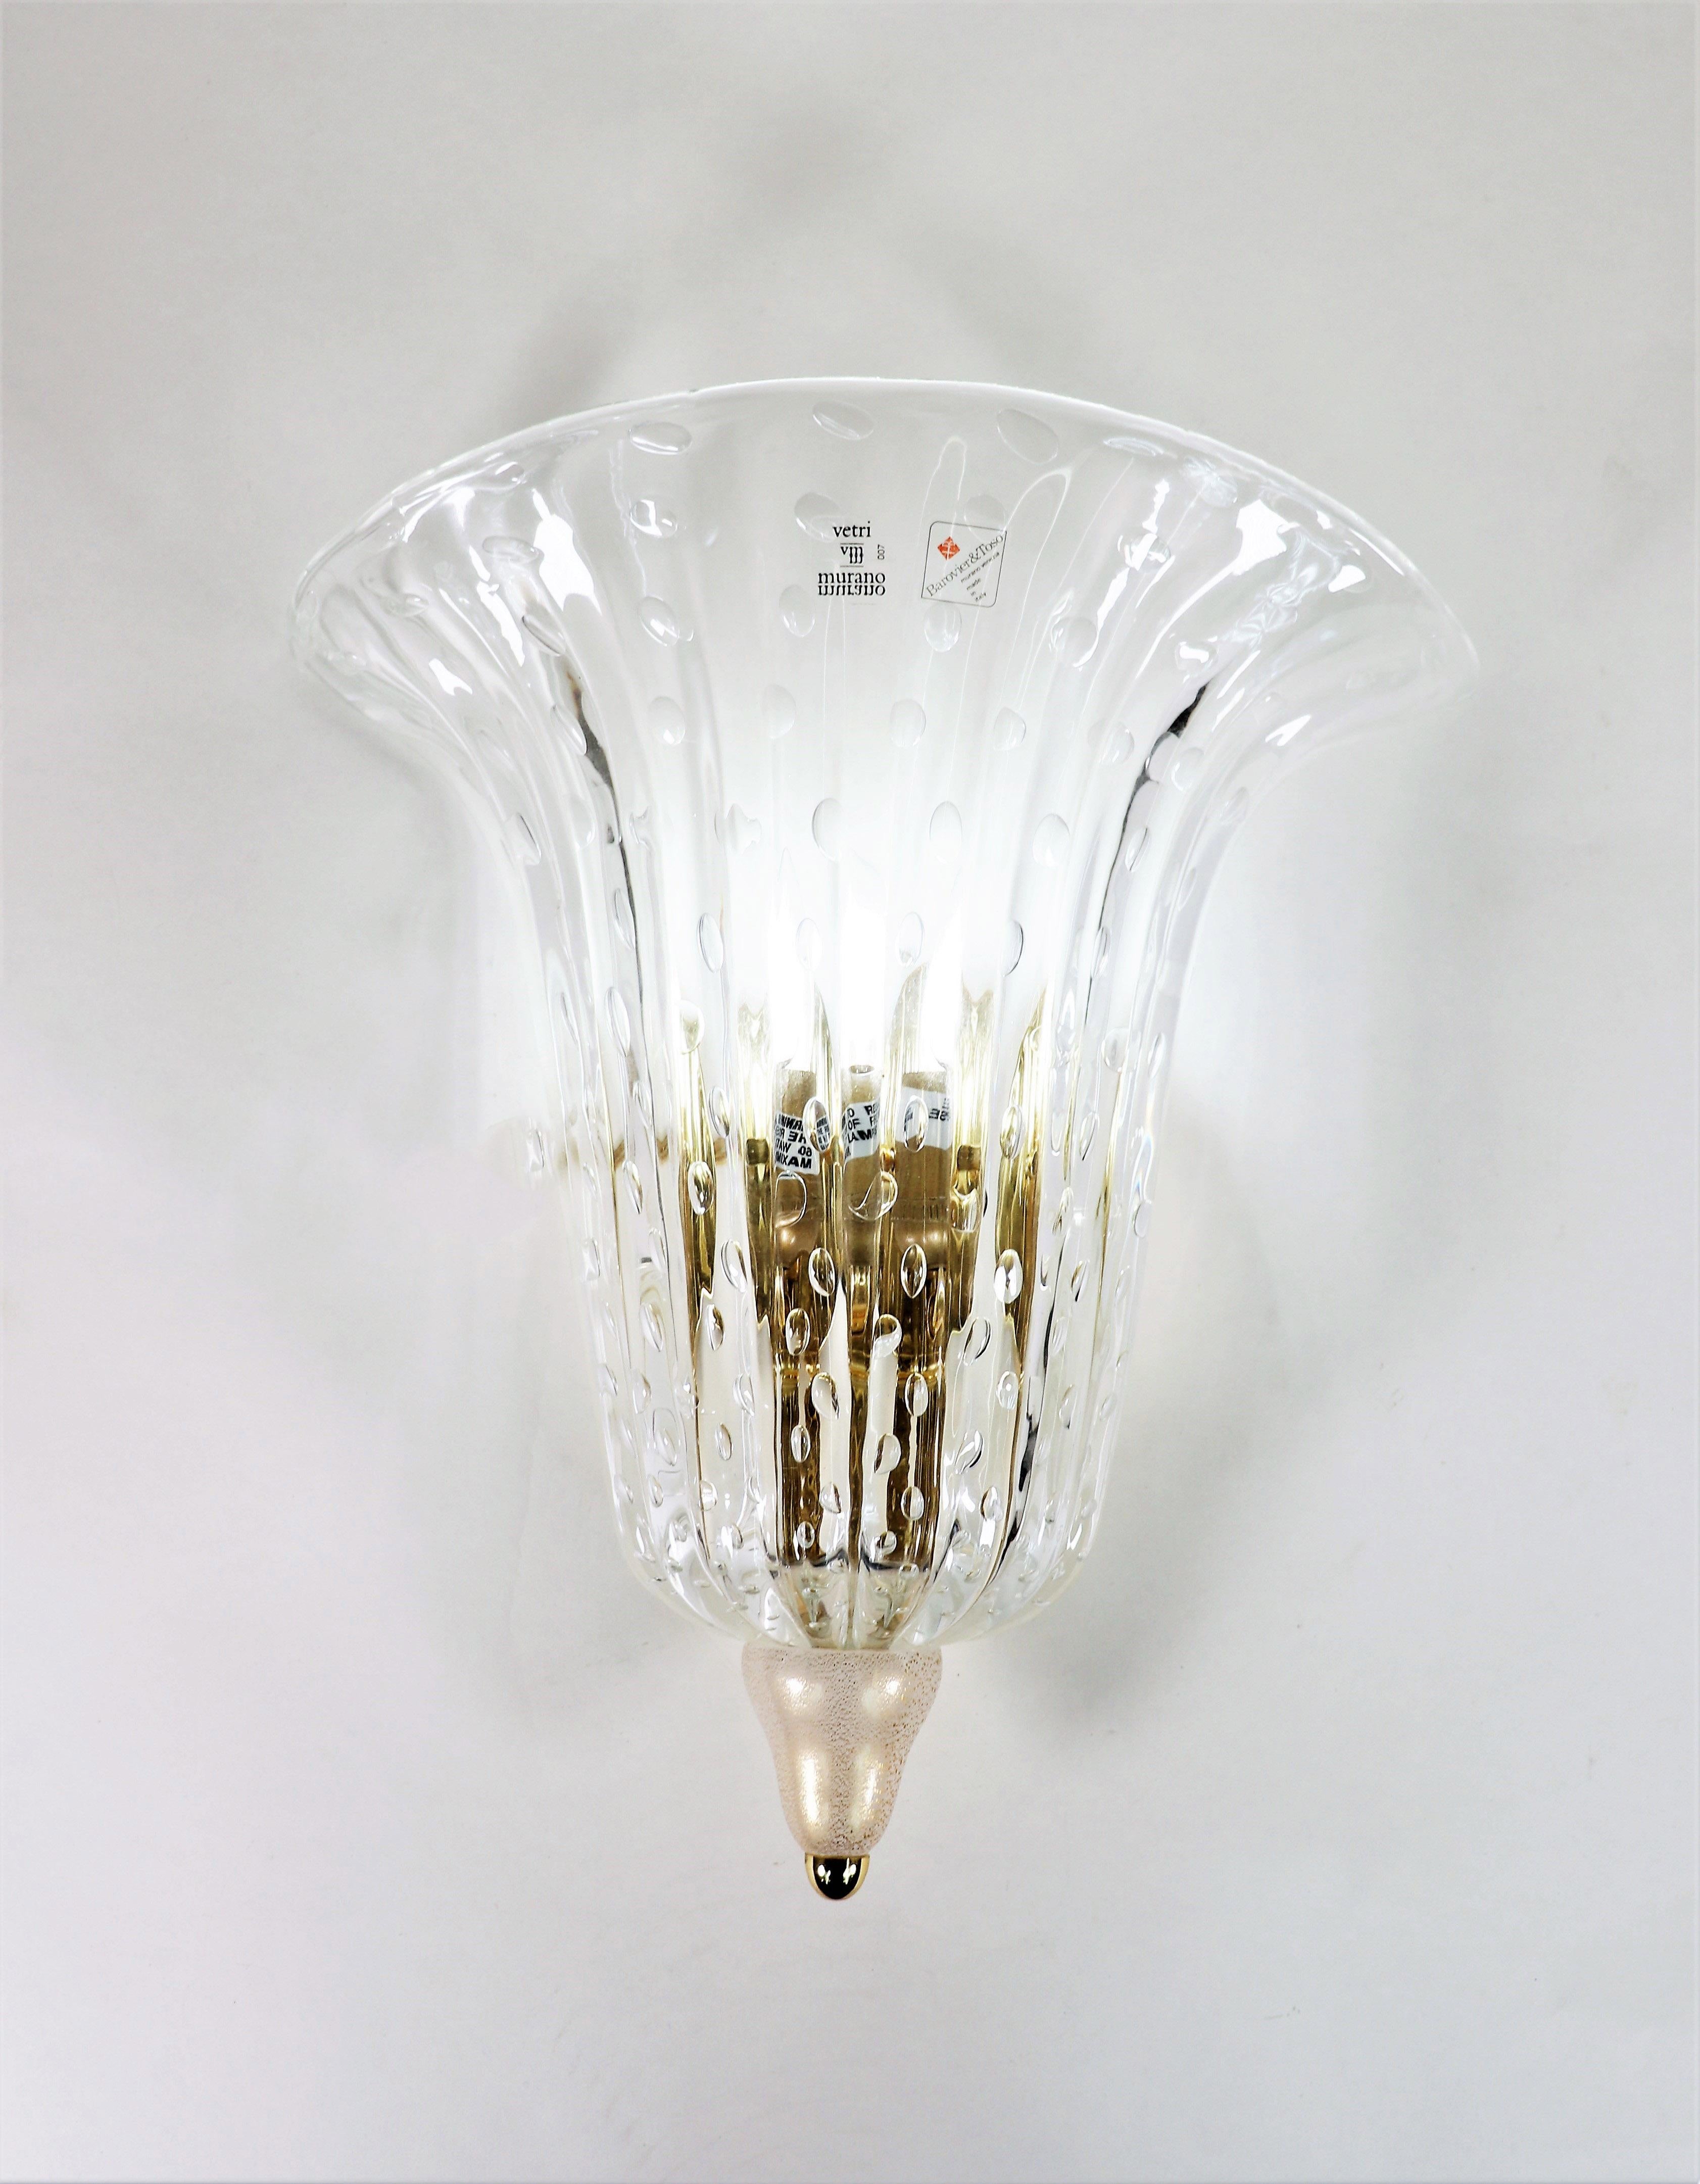 Cette magnifique applique est fabriquée par le légendaire studio de verre de Murano, Barovier&Toso. 

La teinte claire est décorée de 